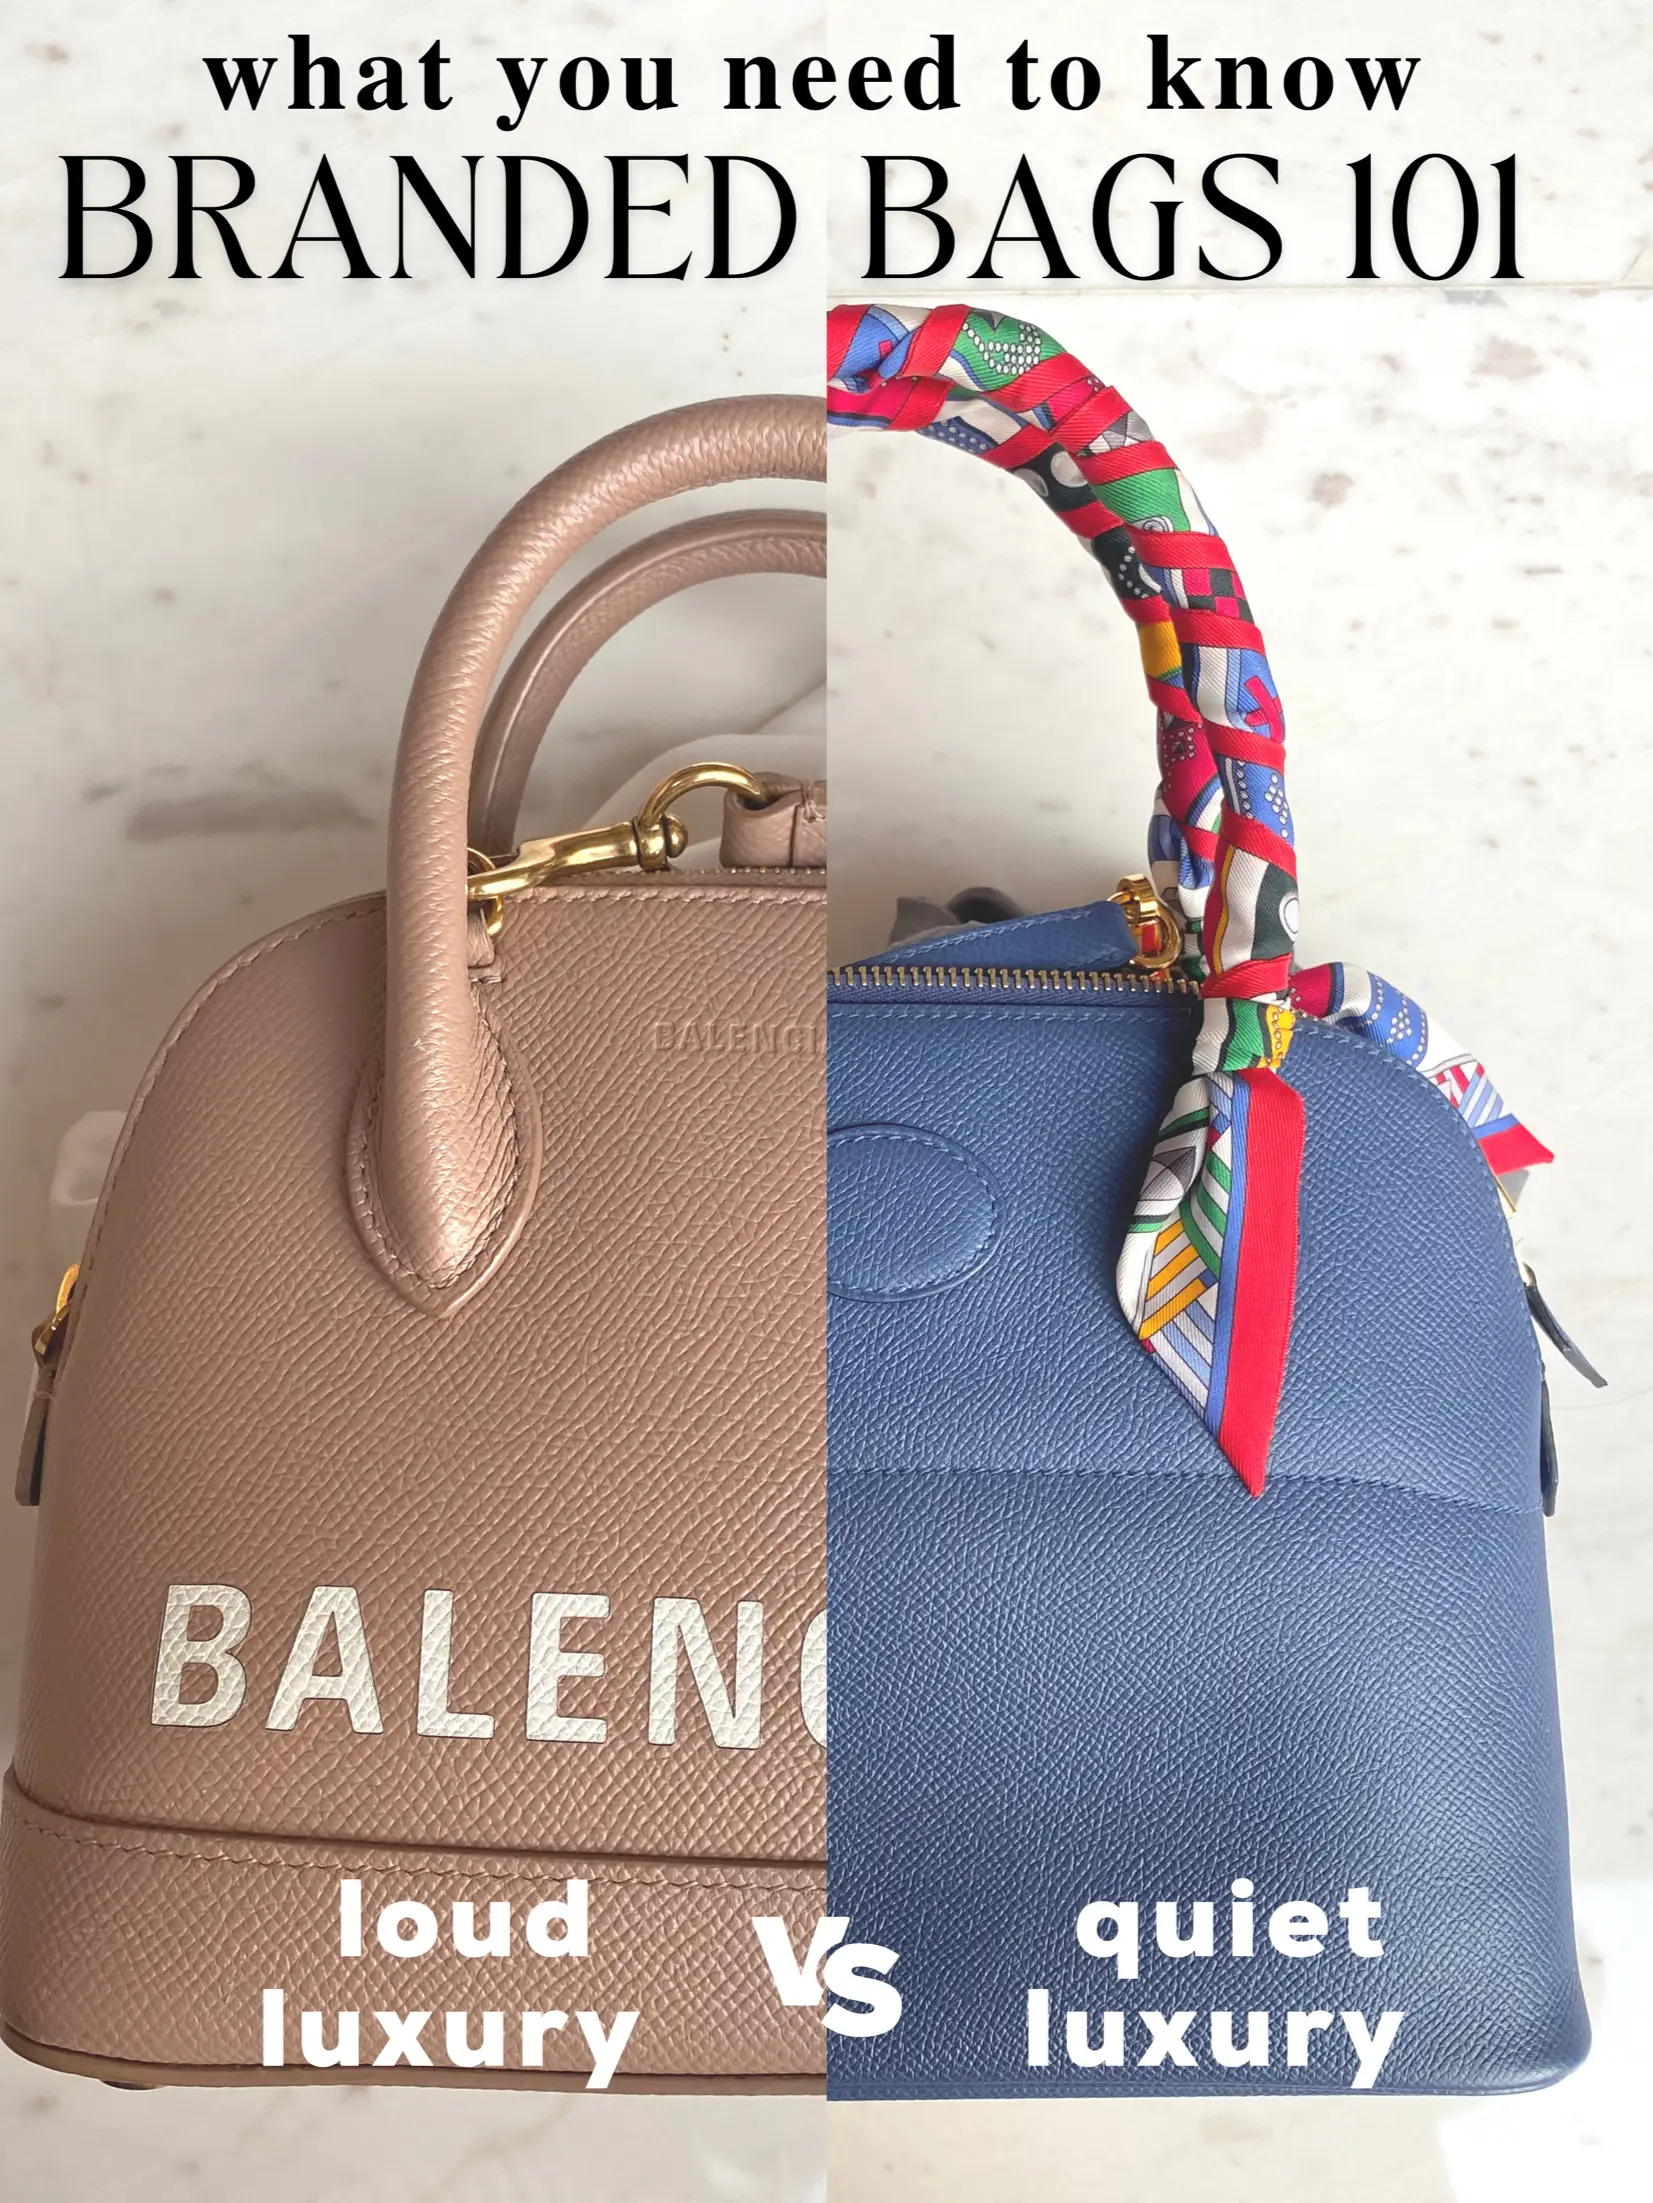 Balenciaga Ville Small Top Handle - Good or Bag